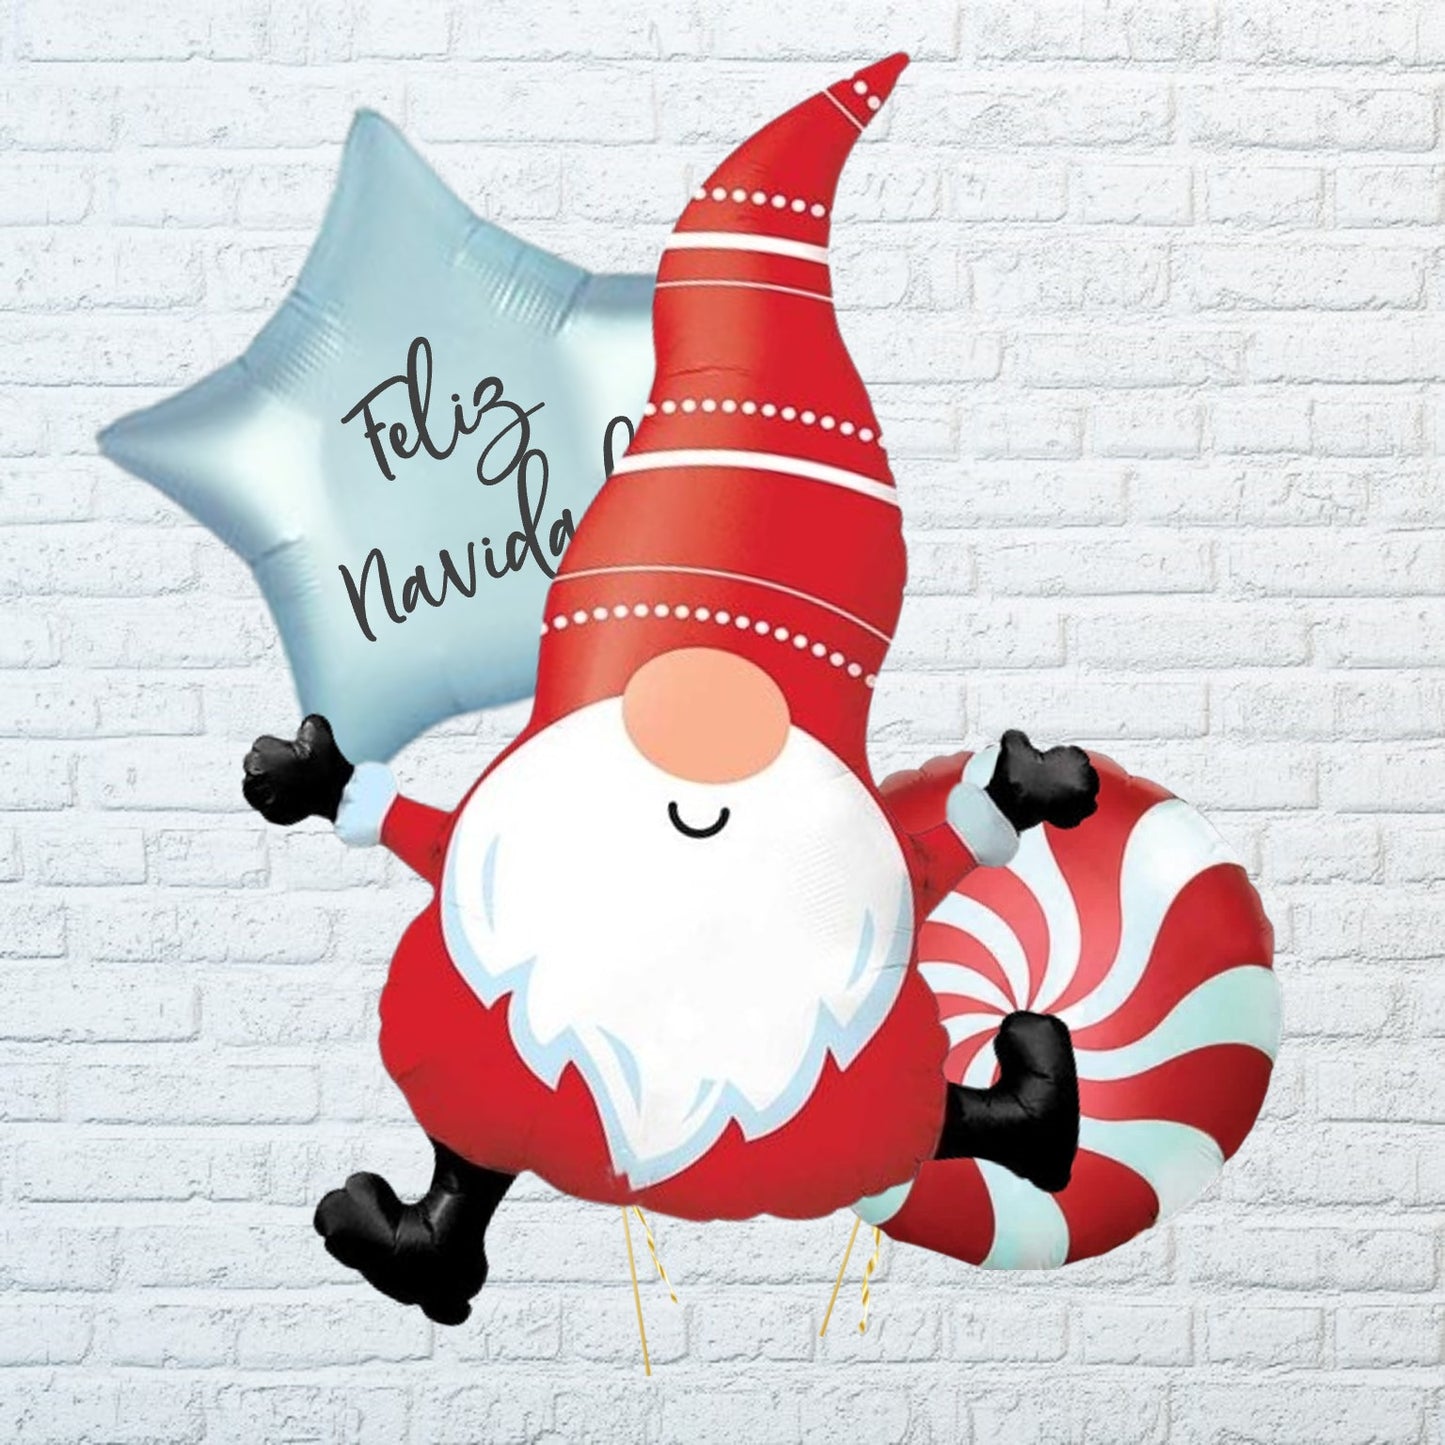 Globo papa noel con globo personalizado para regalar estas navidades en la coruña